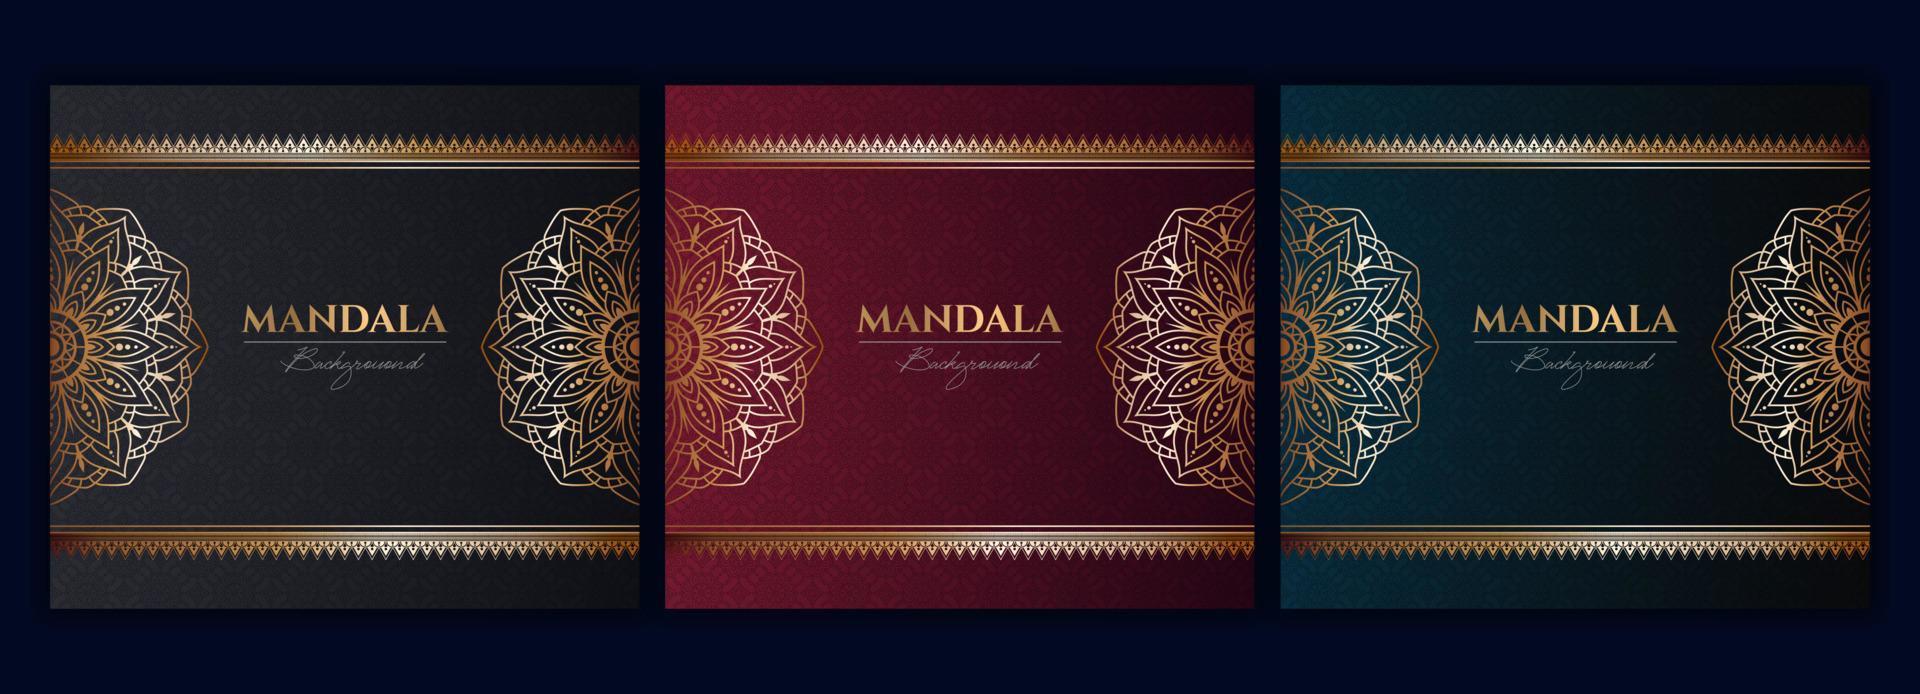 ensemble de modèle de vecteur de fond de mandala de luxe or abstrait, motif arabesque ornemental circulaire pour affiche, couverture, brochure, dépliant. fond rouge, vert, bleu avec élément de mandala floral ethnique